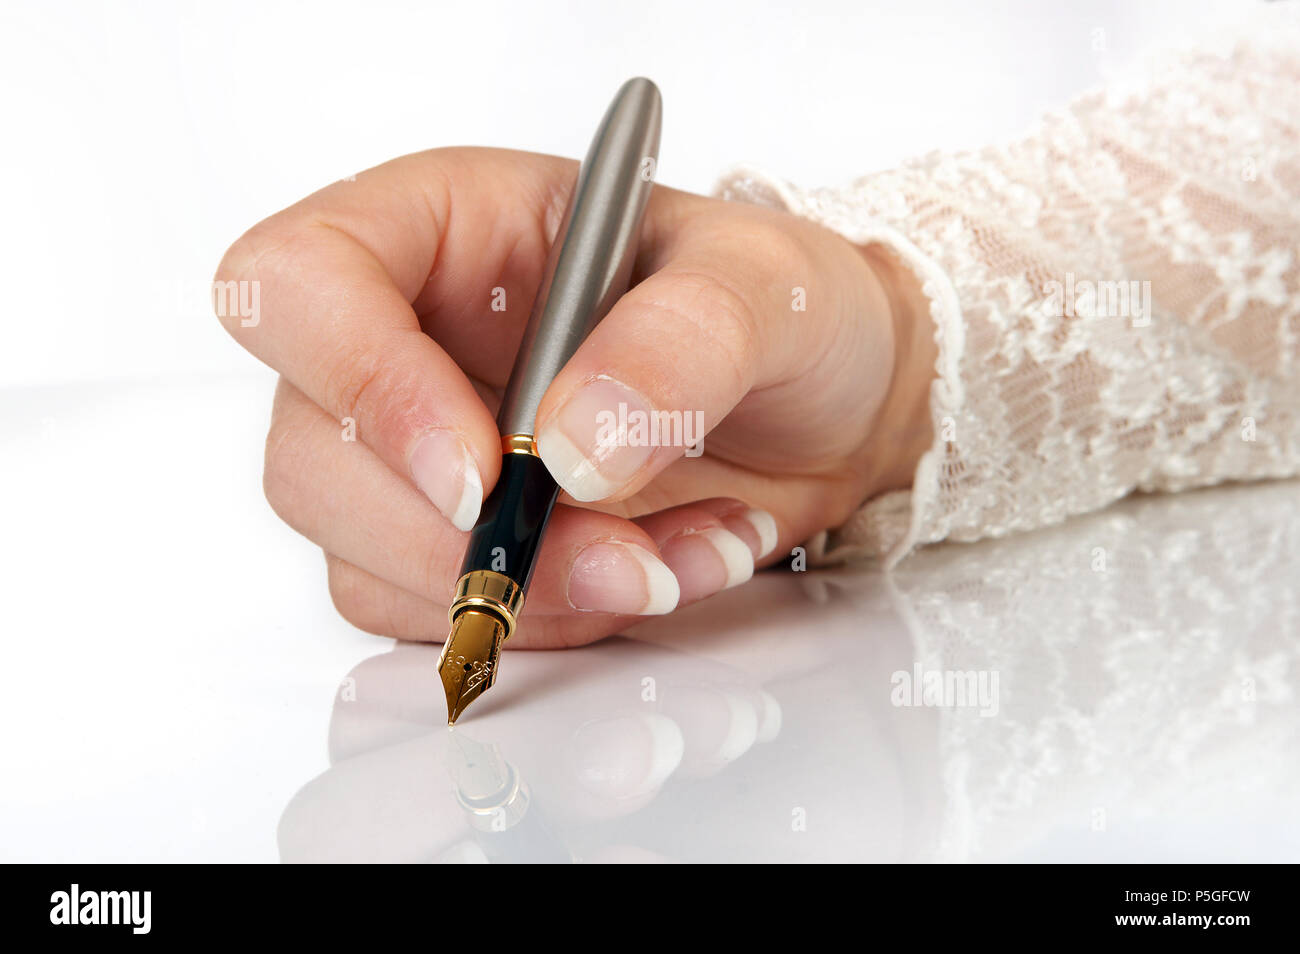 La main élégante écrit avec un stylo à plume d'or Banque D'Images